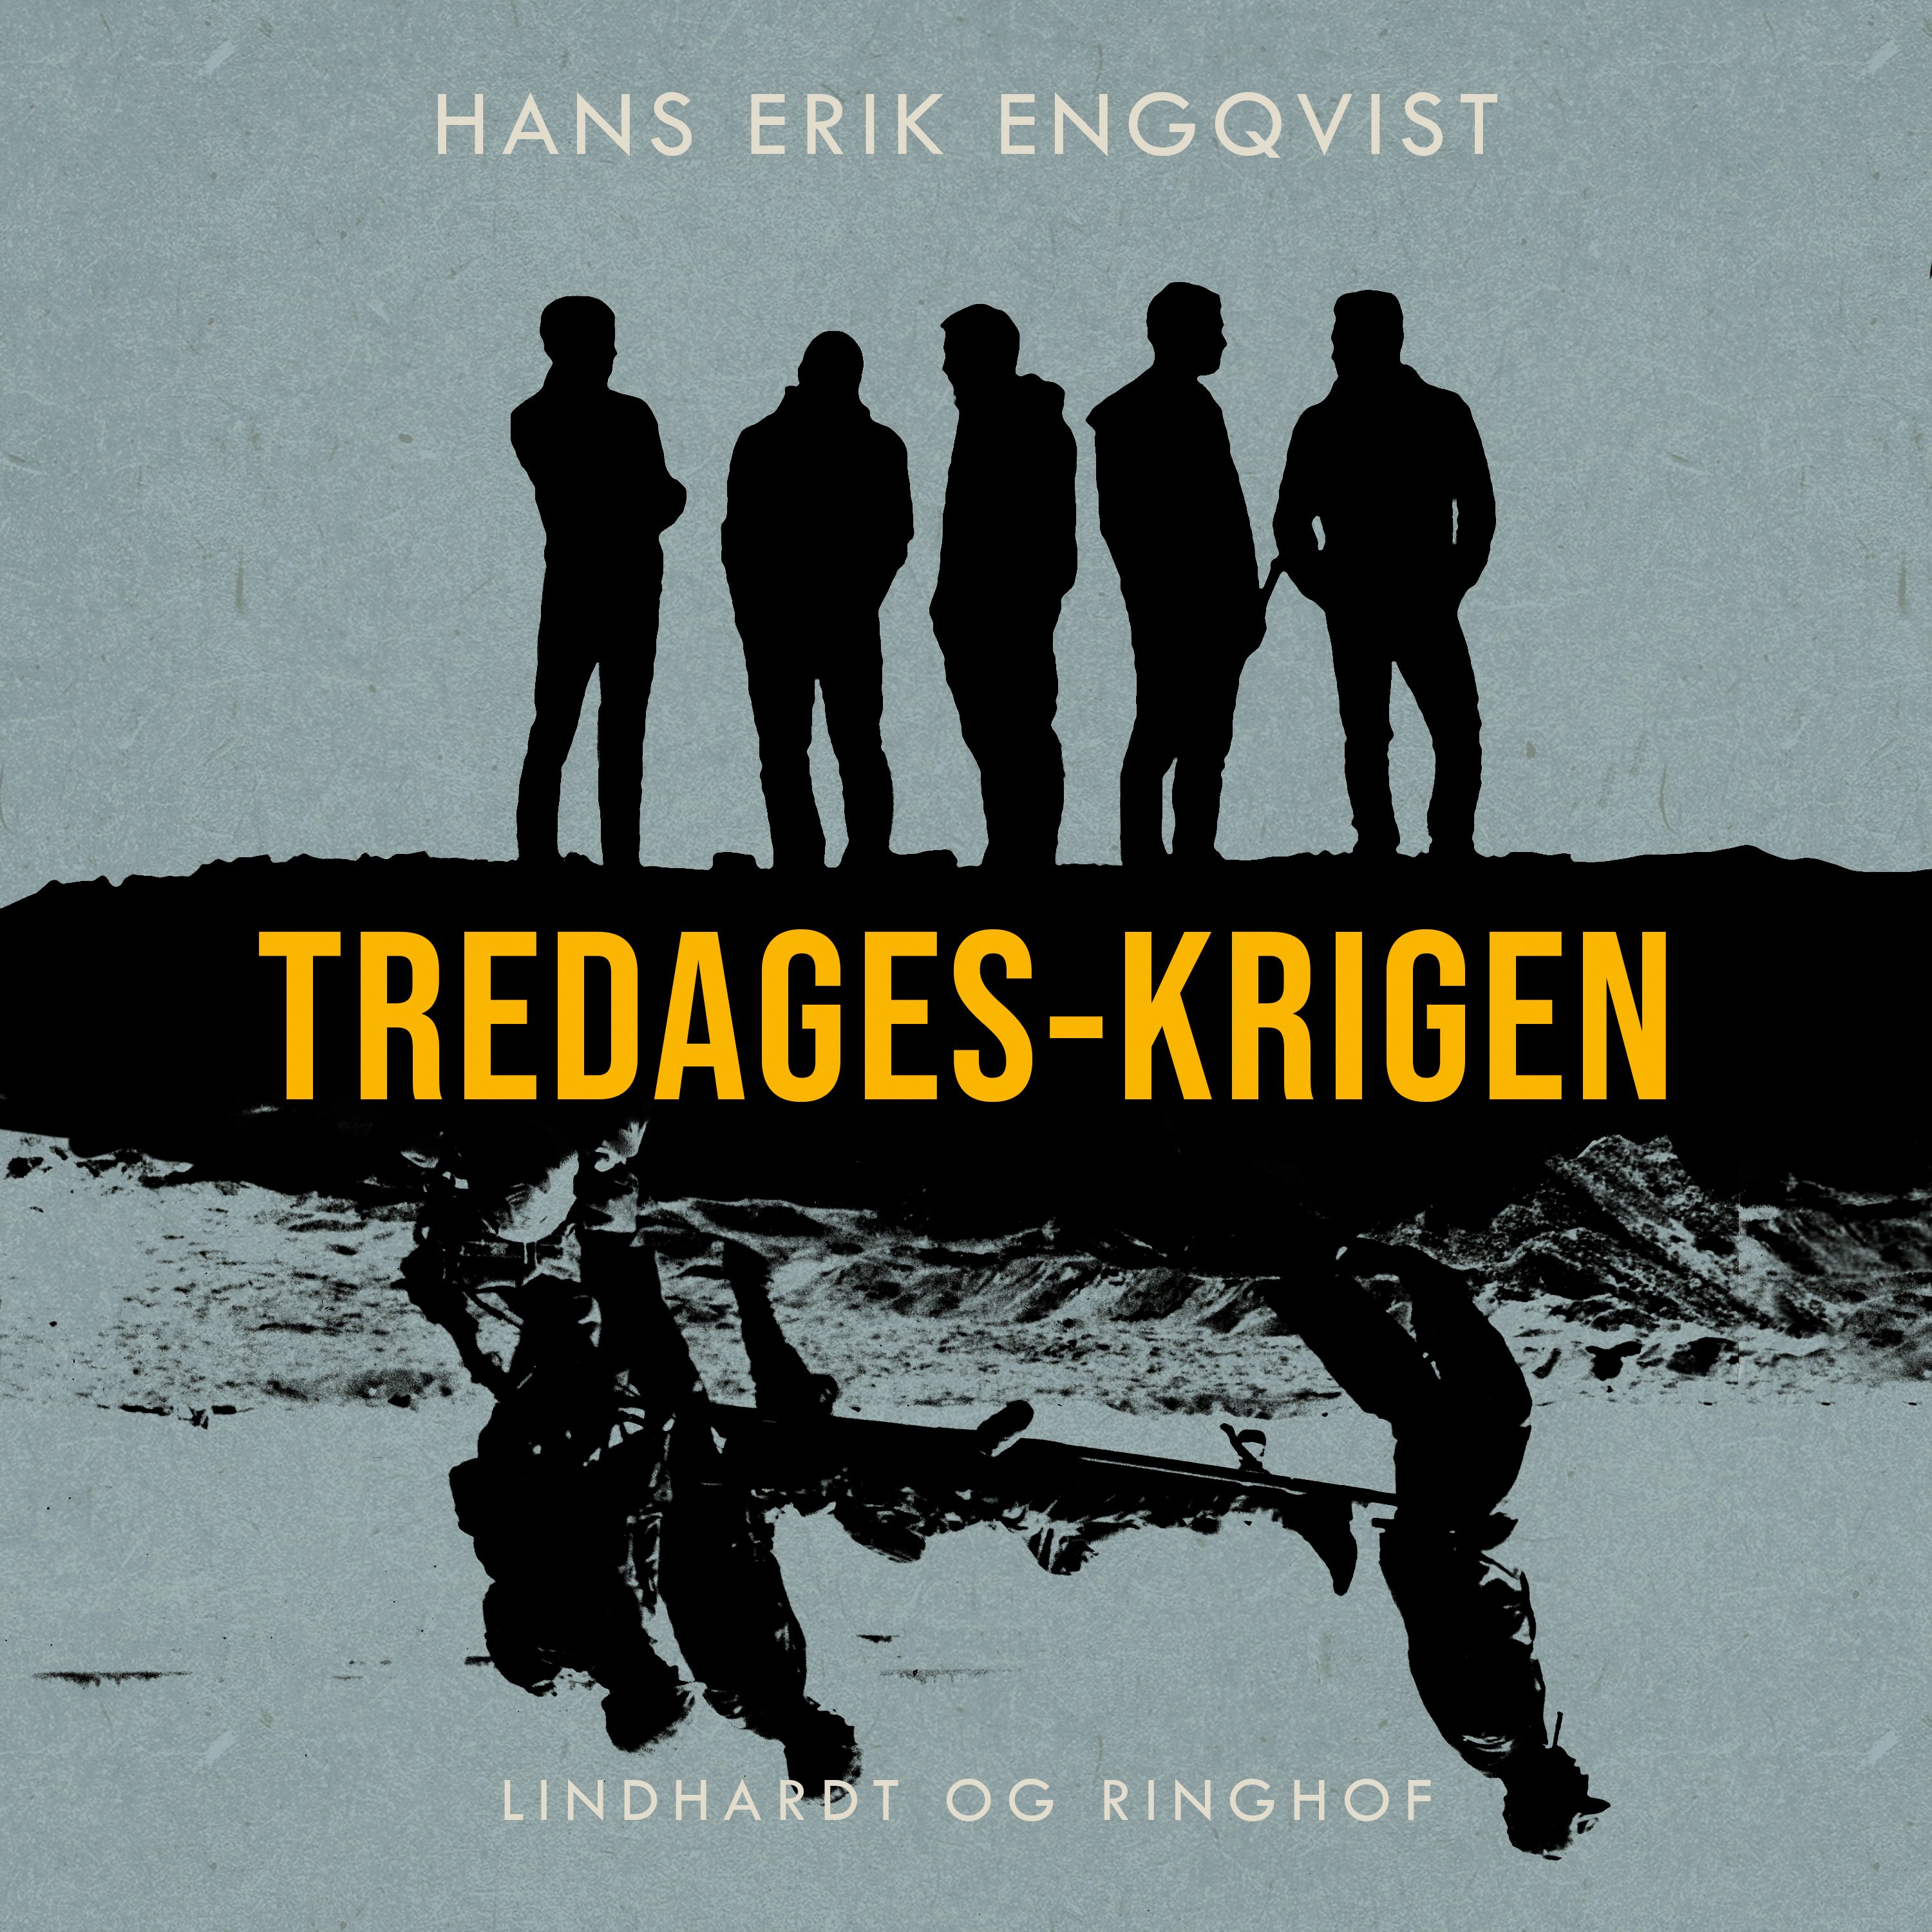 Tredages-krigen, lydbog af Hans Erik Engqvist